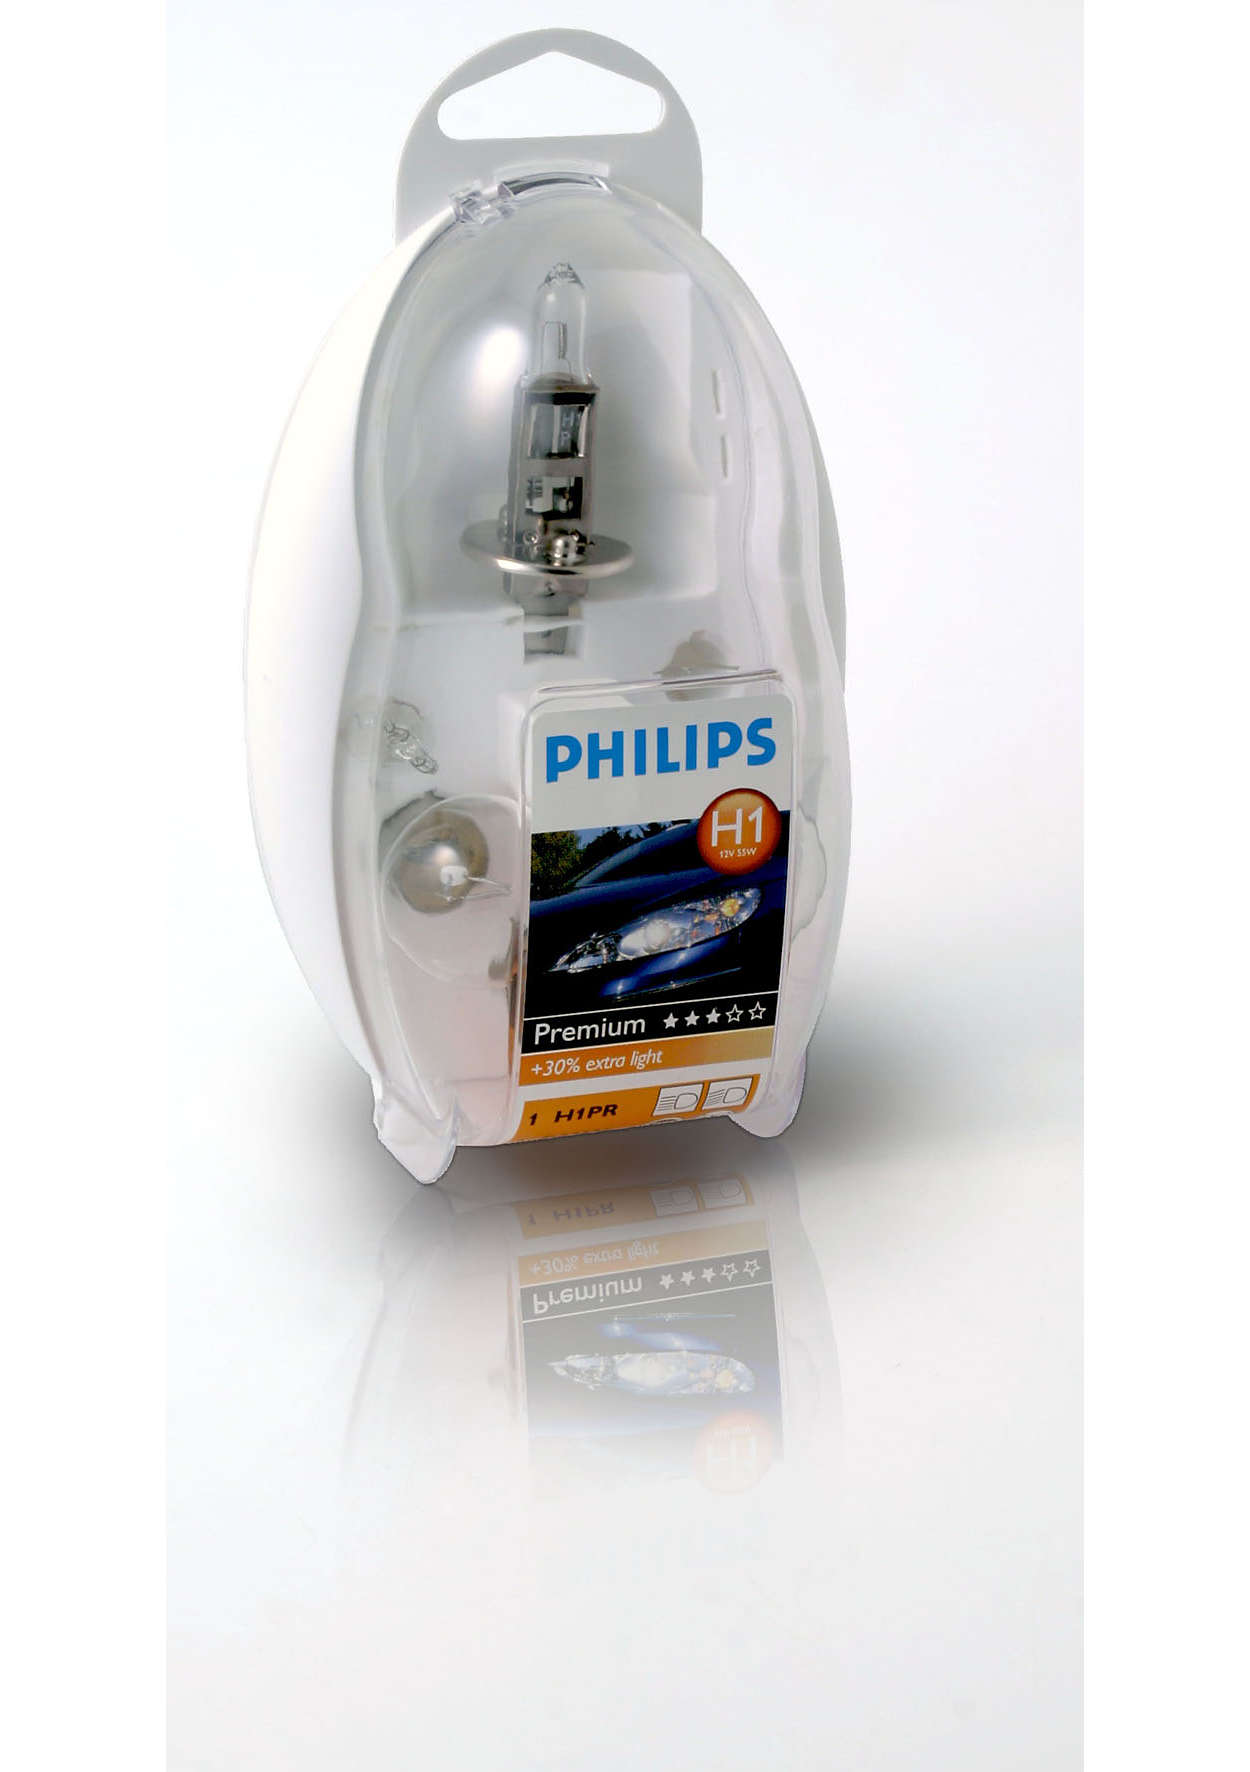 Philips Easy Kit H1 12V 